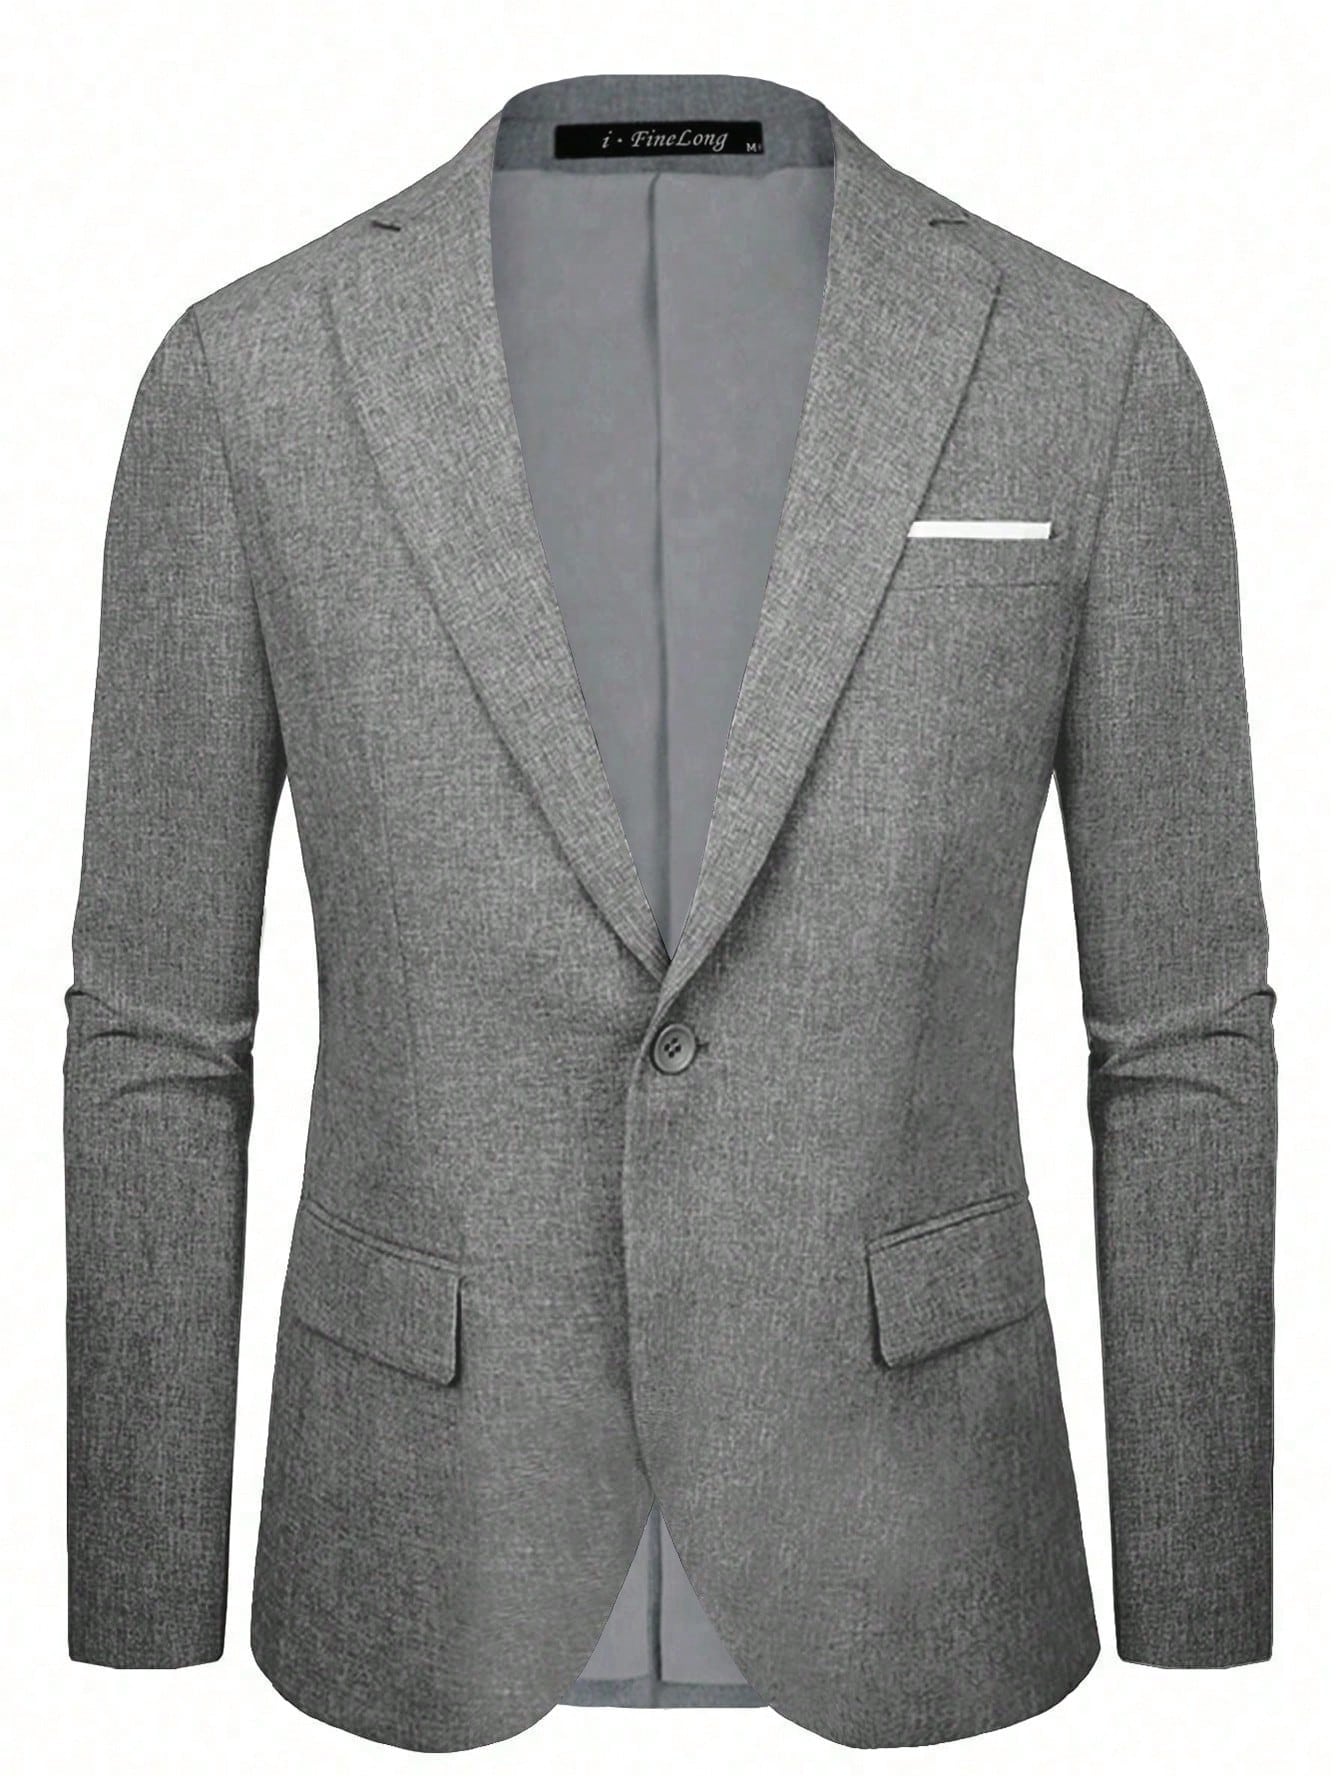 Мужской пиджак на одной пуговице, серый шерстяной пиджак на одной пуговице ferragamo цвет new navy